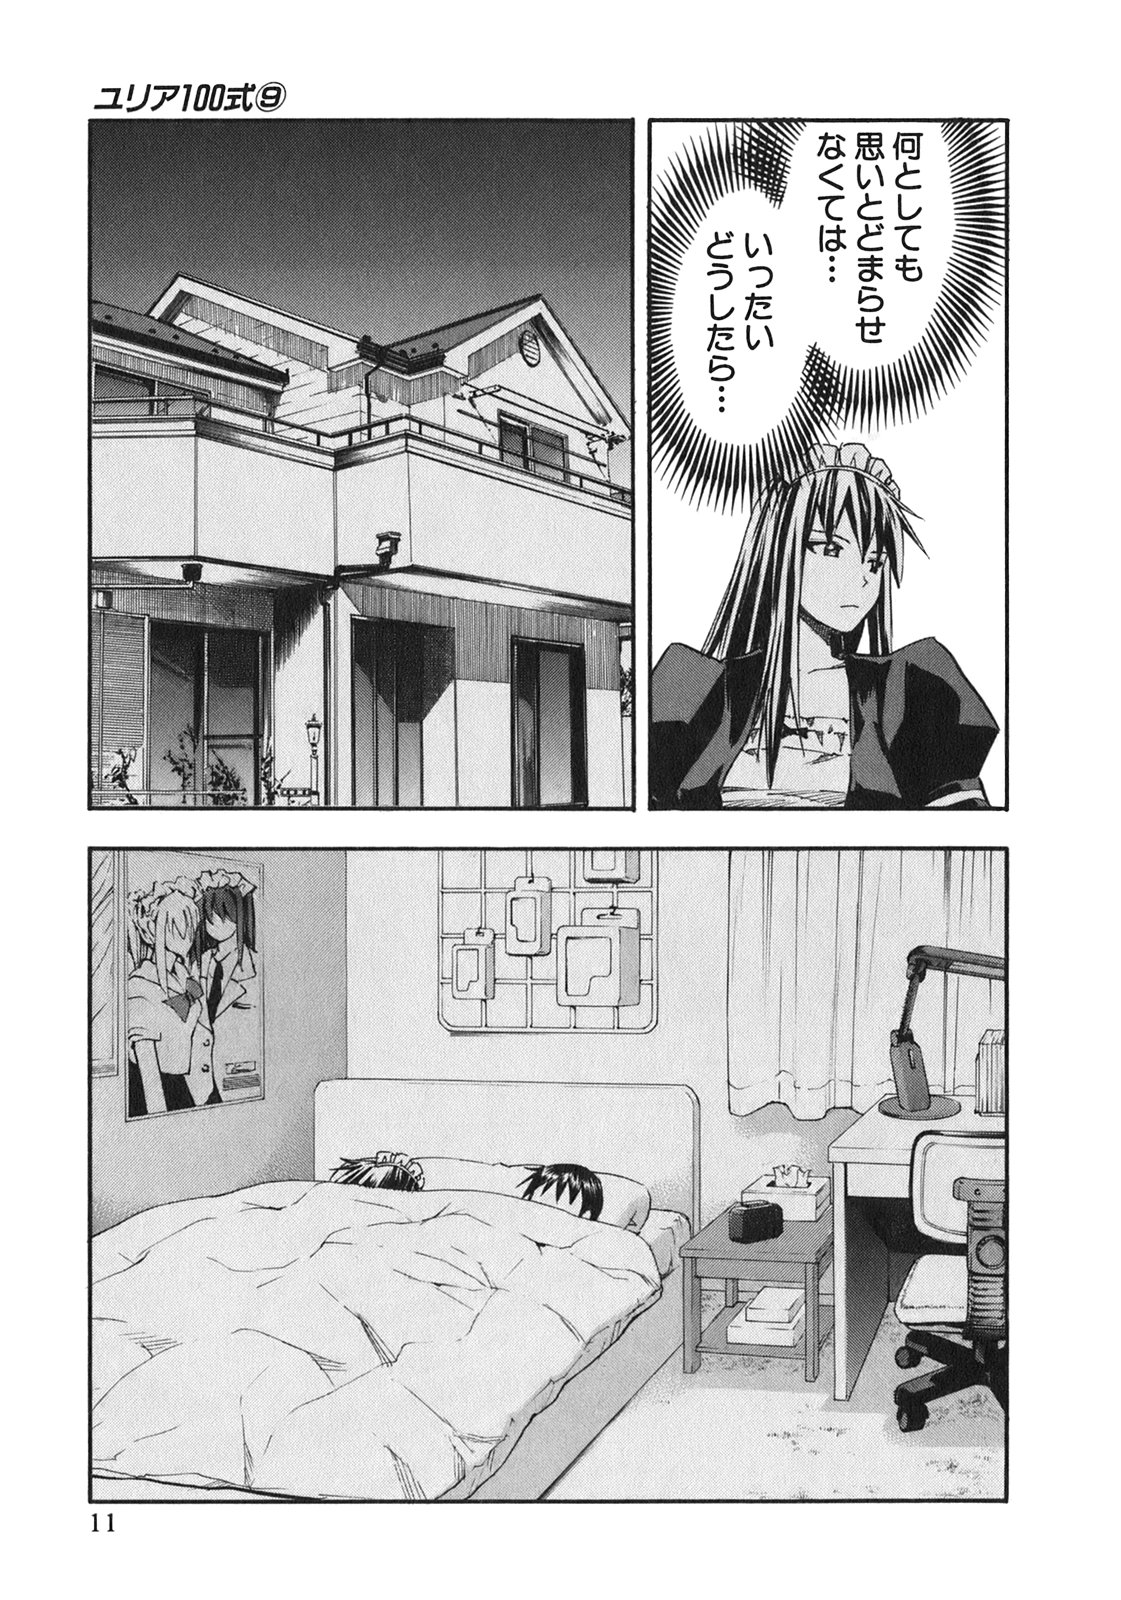 Yuria 100 Shiki Volume 9 